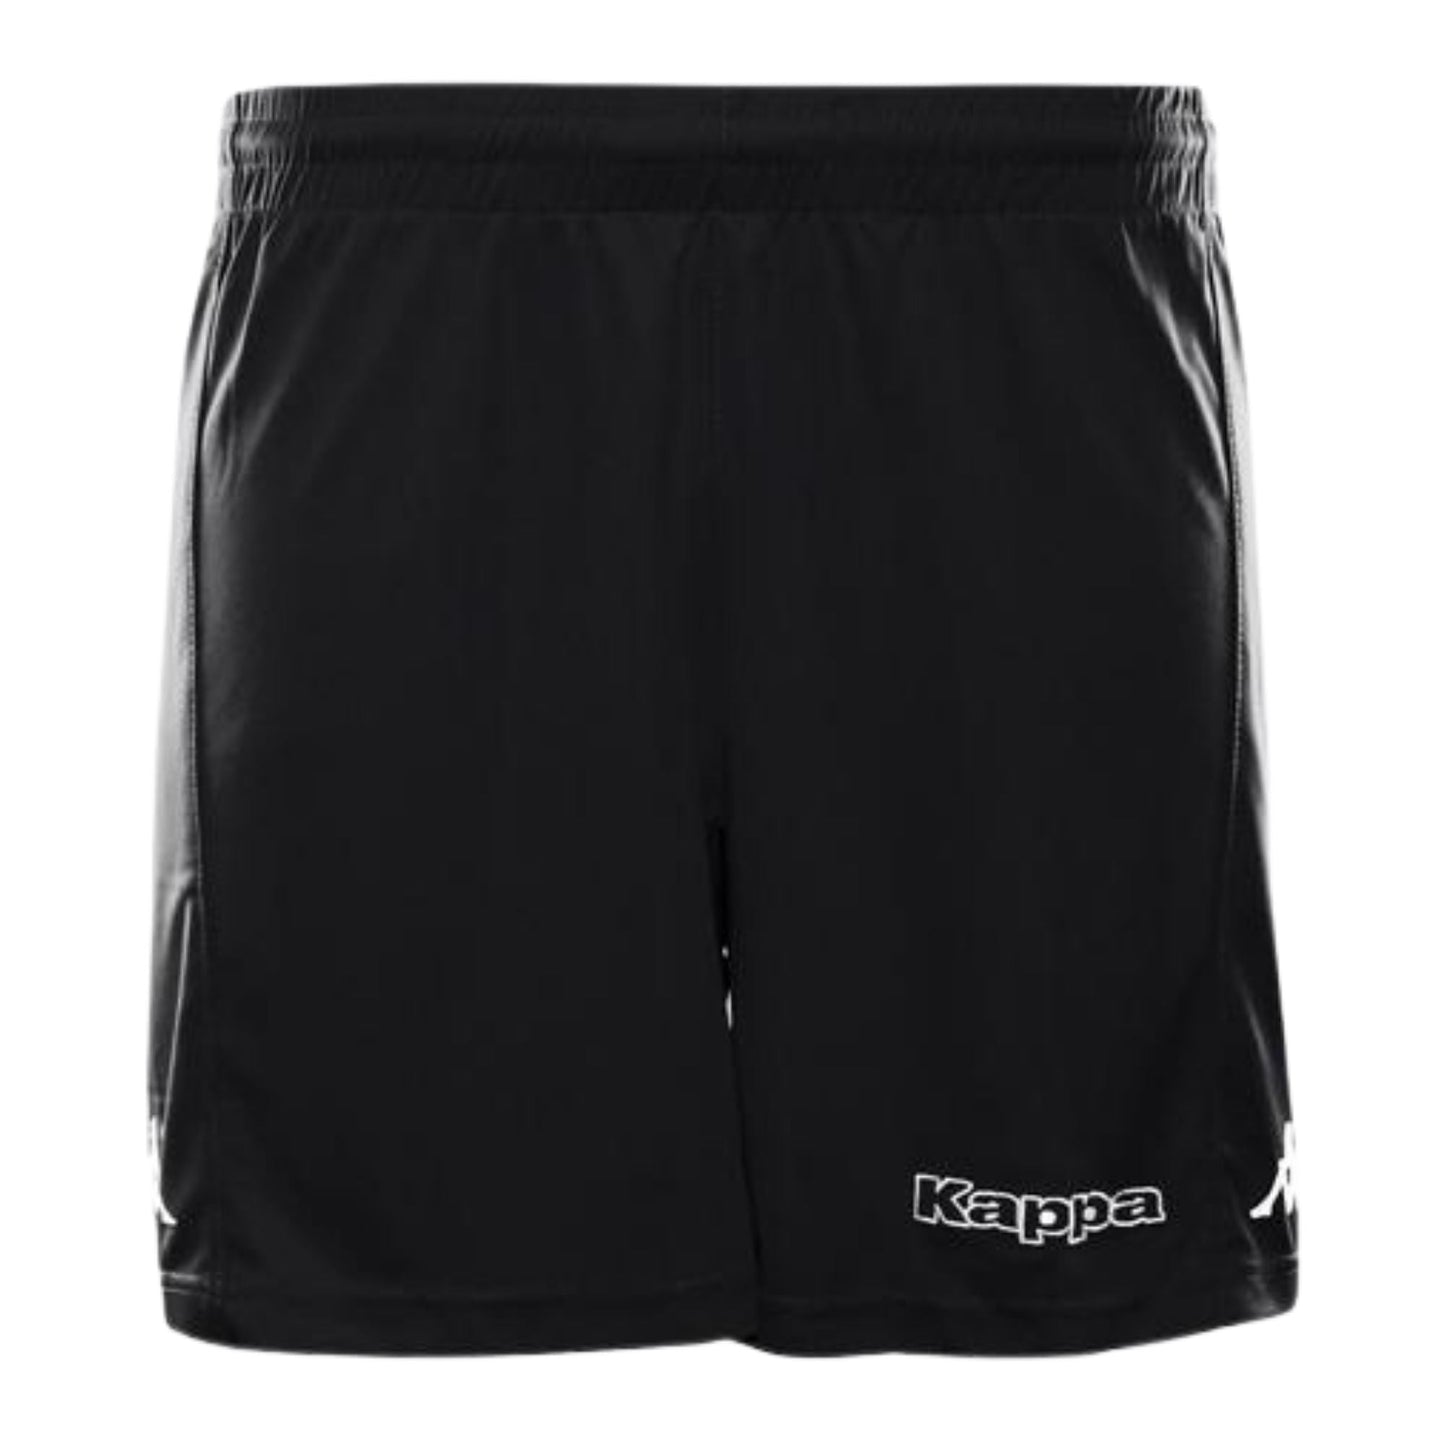 Kappa Unisex Shorts Shorts KAPPA XS BLACK 